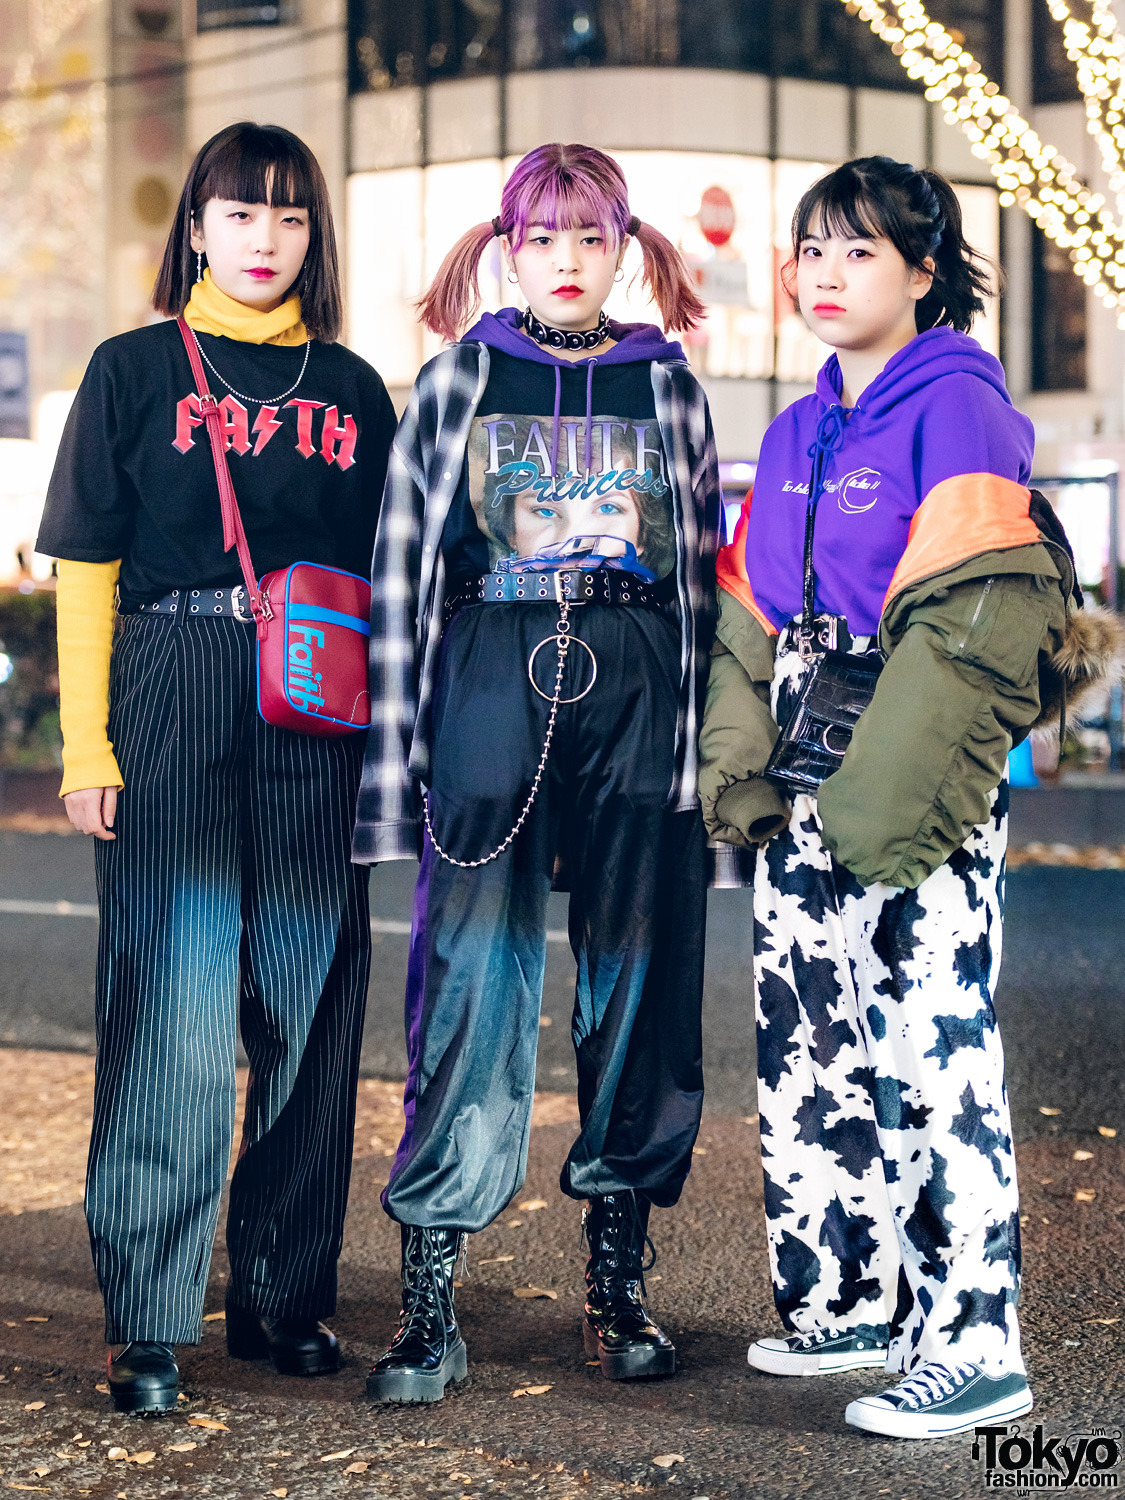 Tokyo Fashion: Photo